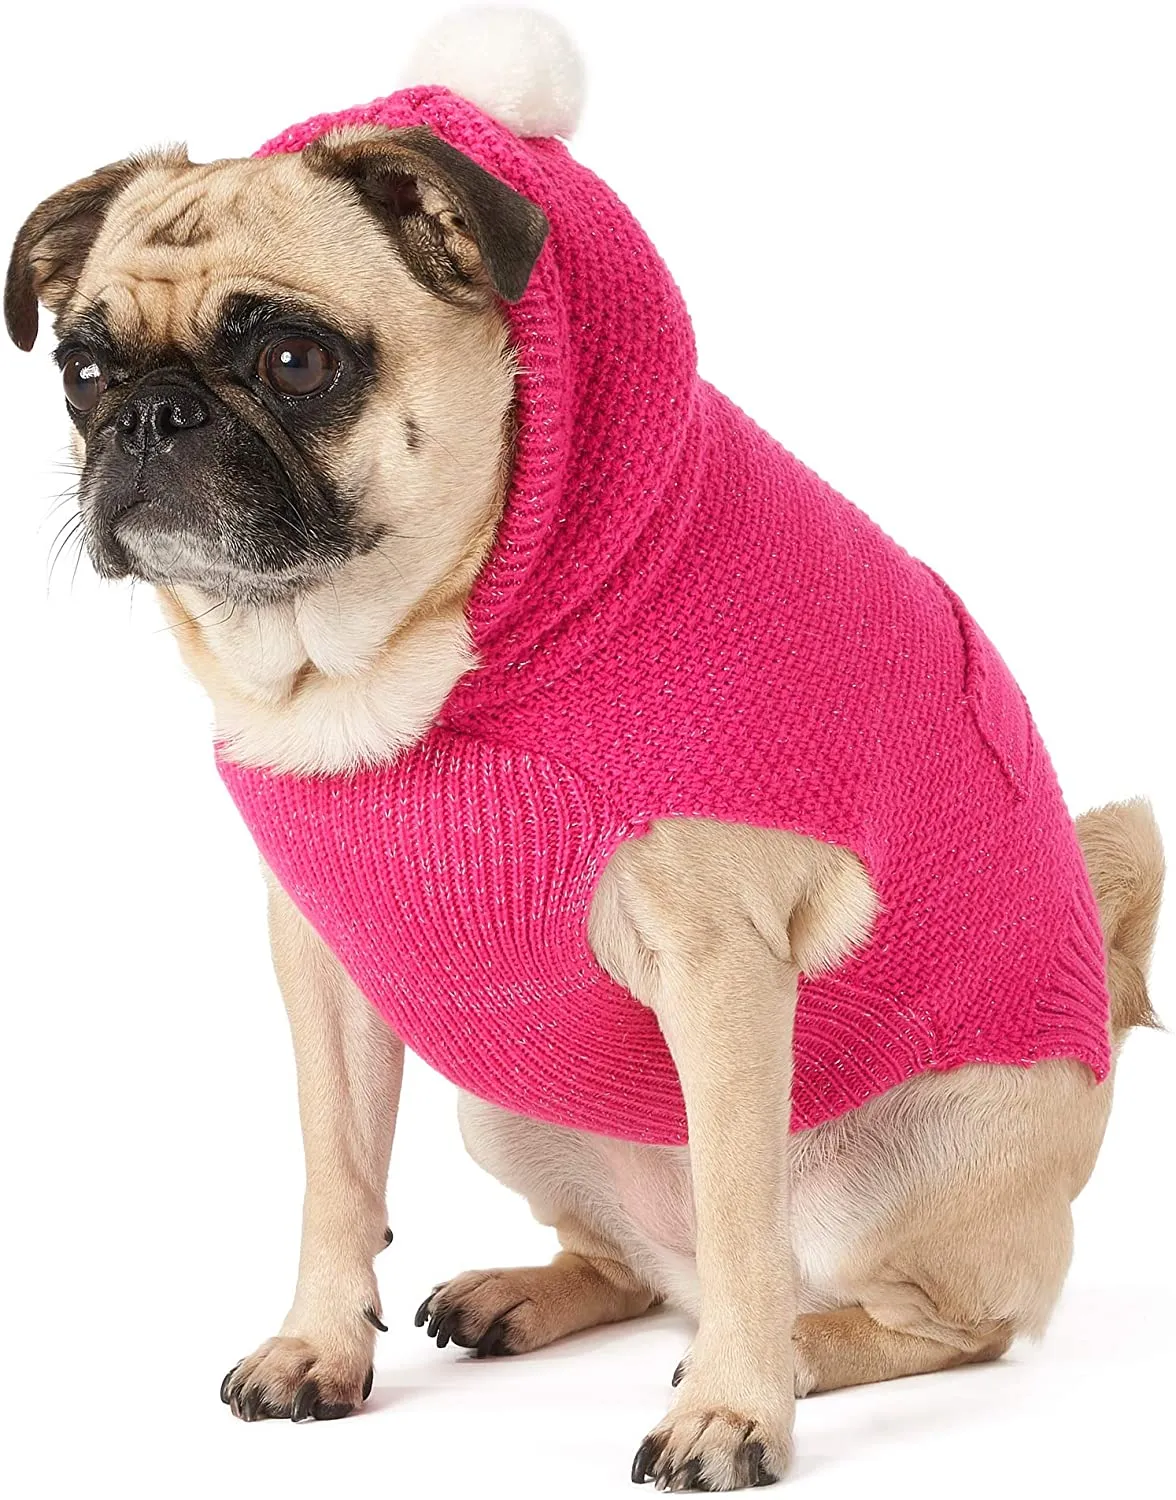 Kürklü Ball, Küçük Köpekler Yavru Giyim Kedi Kostüm Sıcak Kış Coat Açık Ceket ile Örme Köpek Triko Hoodie (Pembe)